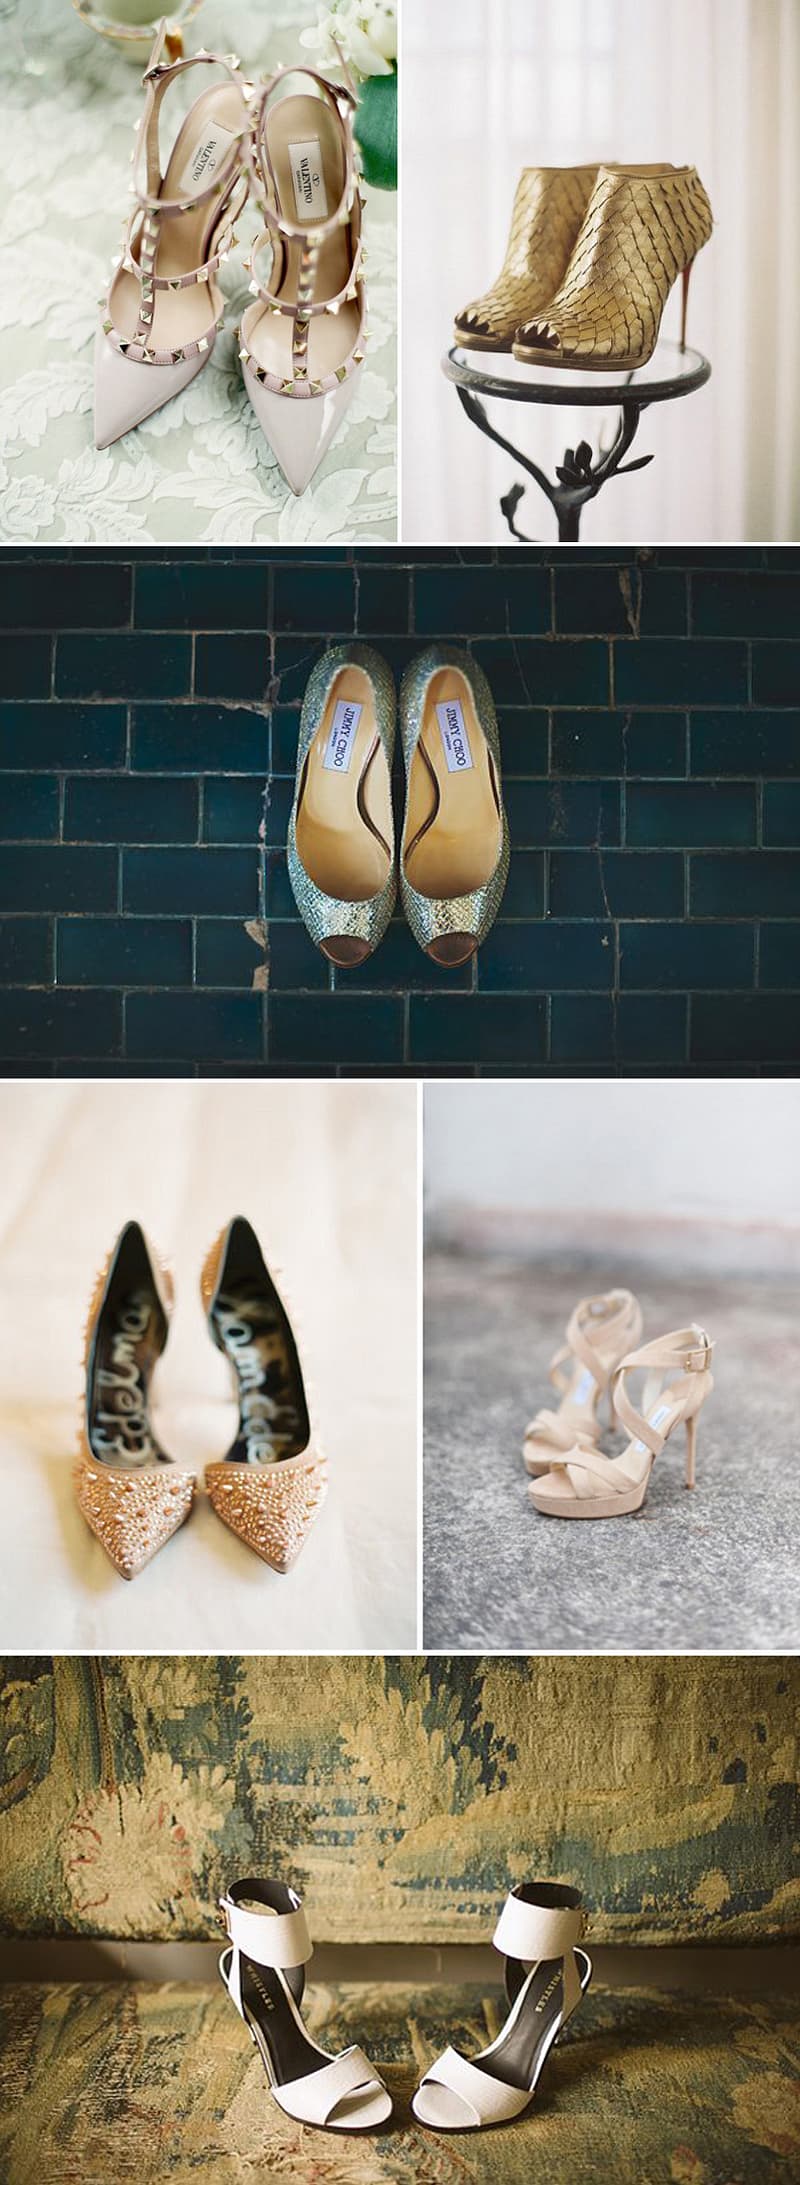 Coco Wedding Venues - City Chic Wedding Inspiration - Killer Heels.